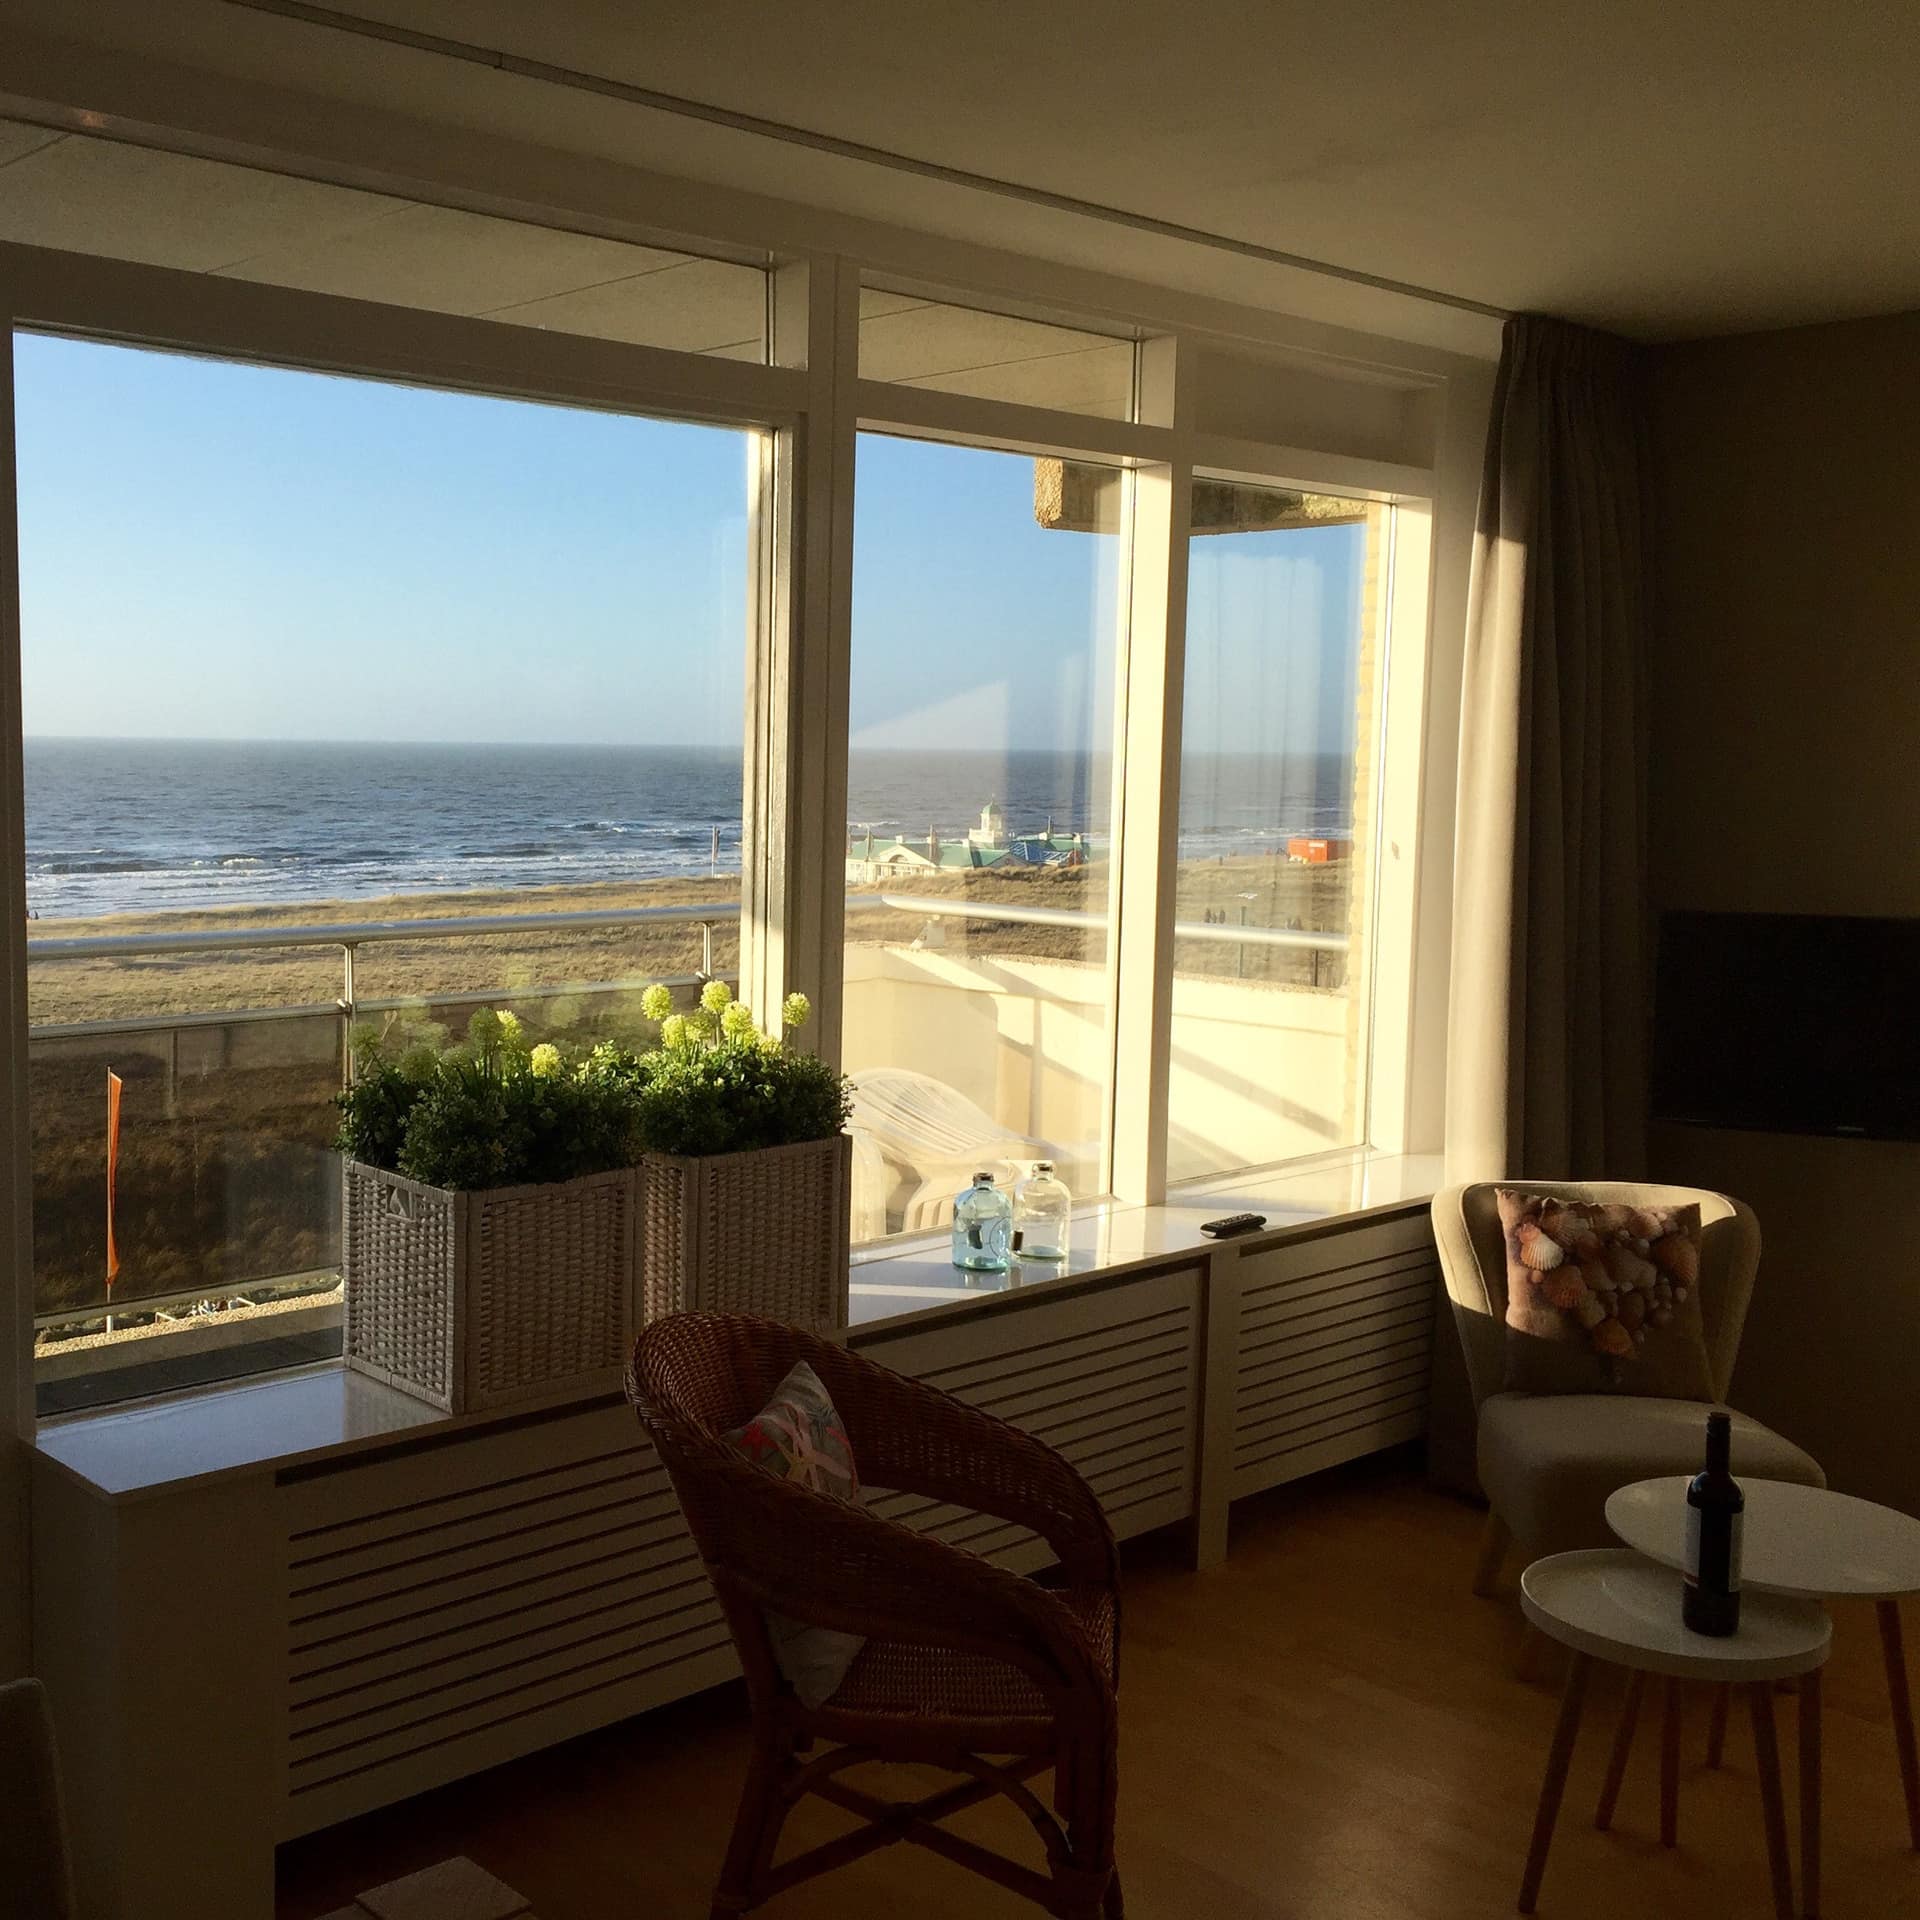 Ferienwohnung in Noordwijk aan Zee direkt am Strand mit großer Fensterfront, Balkon und Meerblick